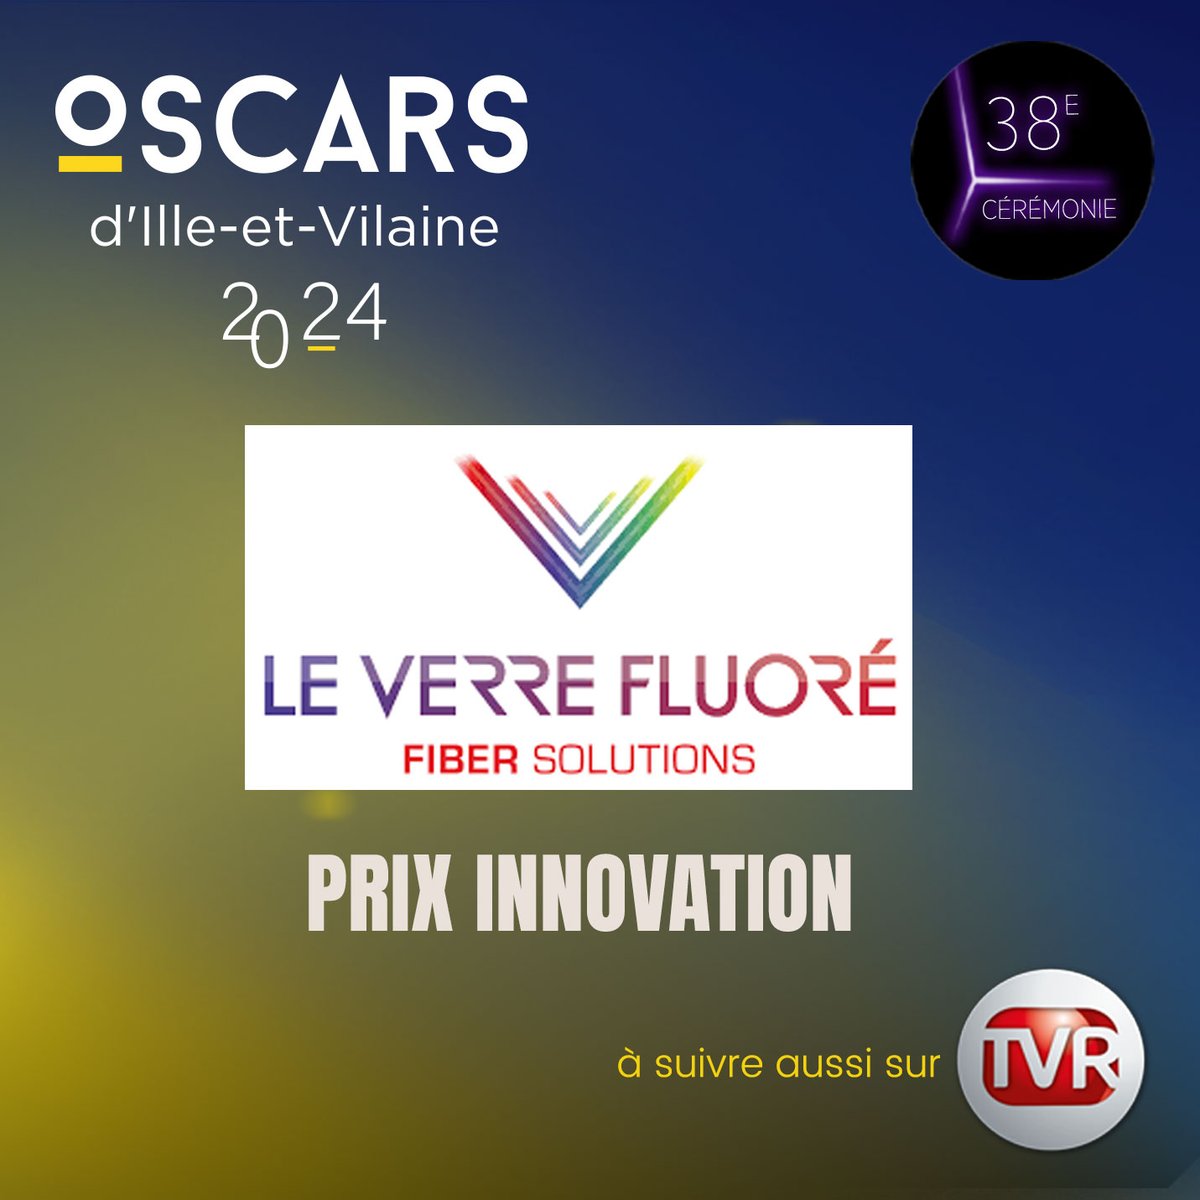 Bravo @LeVerreFluore, leader mondial du verre et des composants fibrés fluorés, pour cet Oscar innovation. #oscars35 @MEDEFBretagne @ille_et_vilaine @oecbretagne @CAIlleEtVilaine